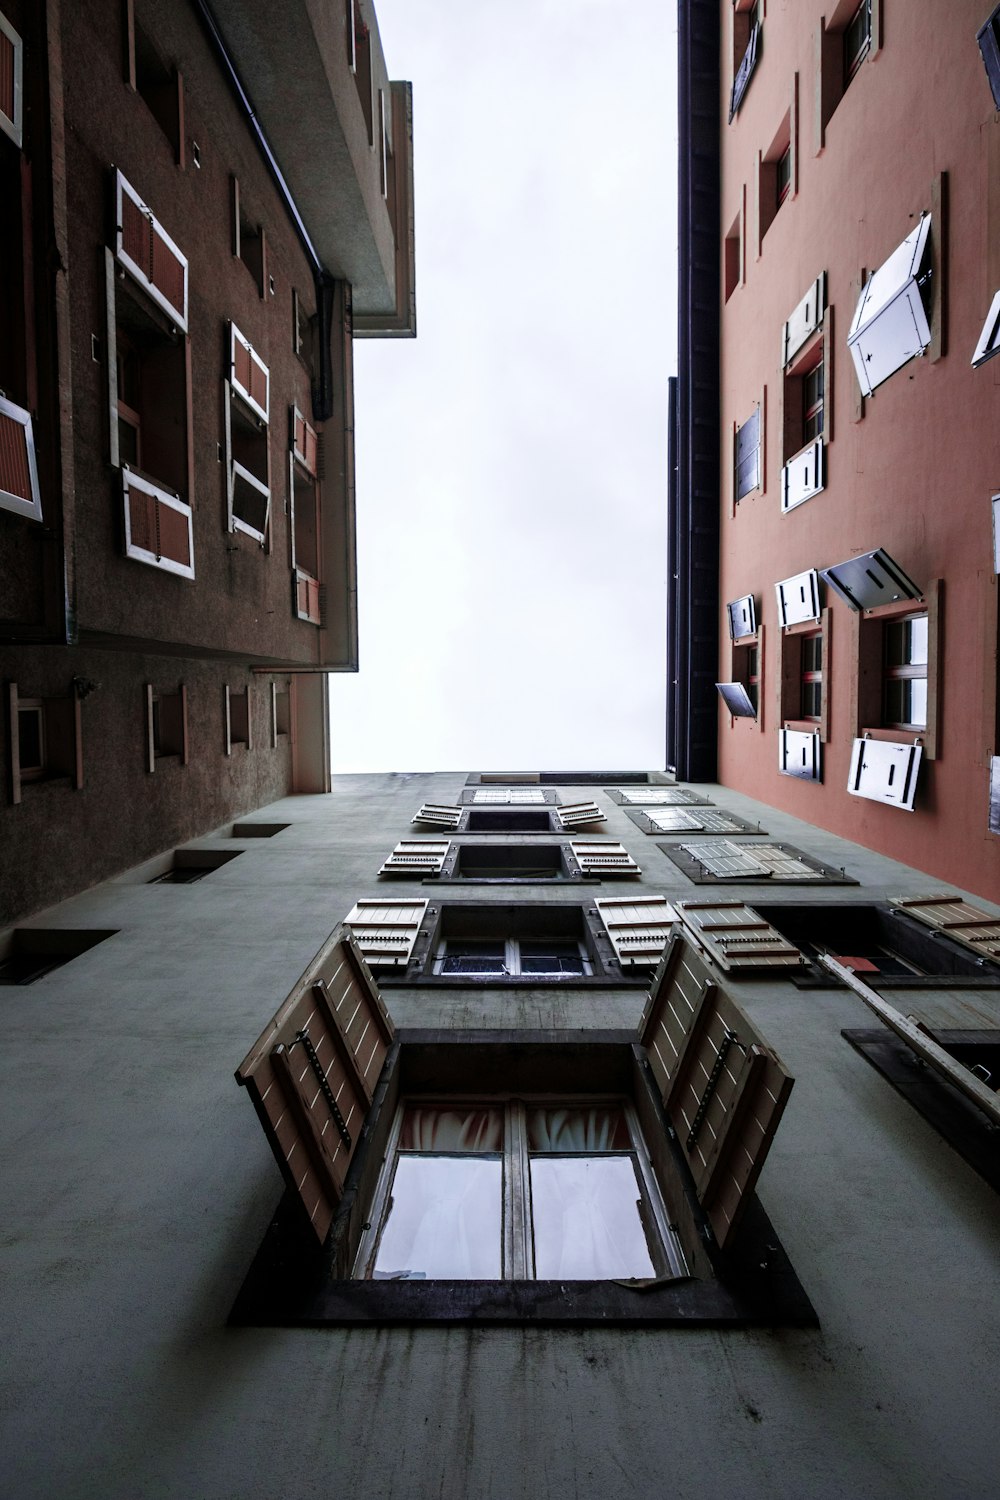 fotografia de baixo ângulo do edifício com janelas abertas durante o dia